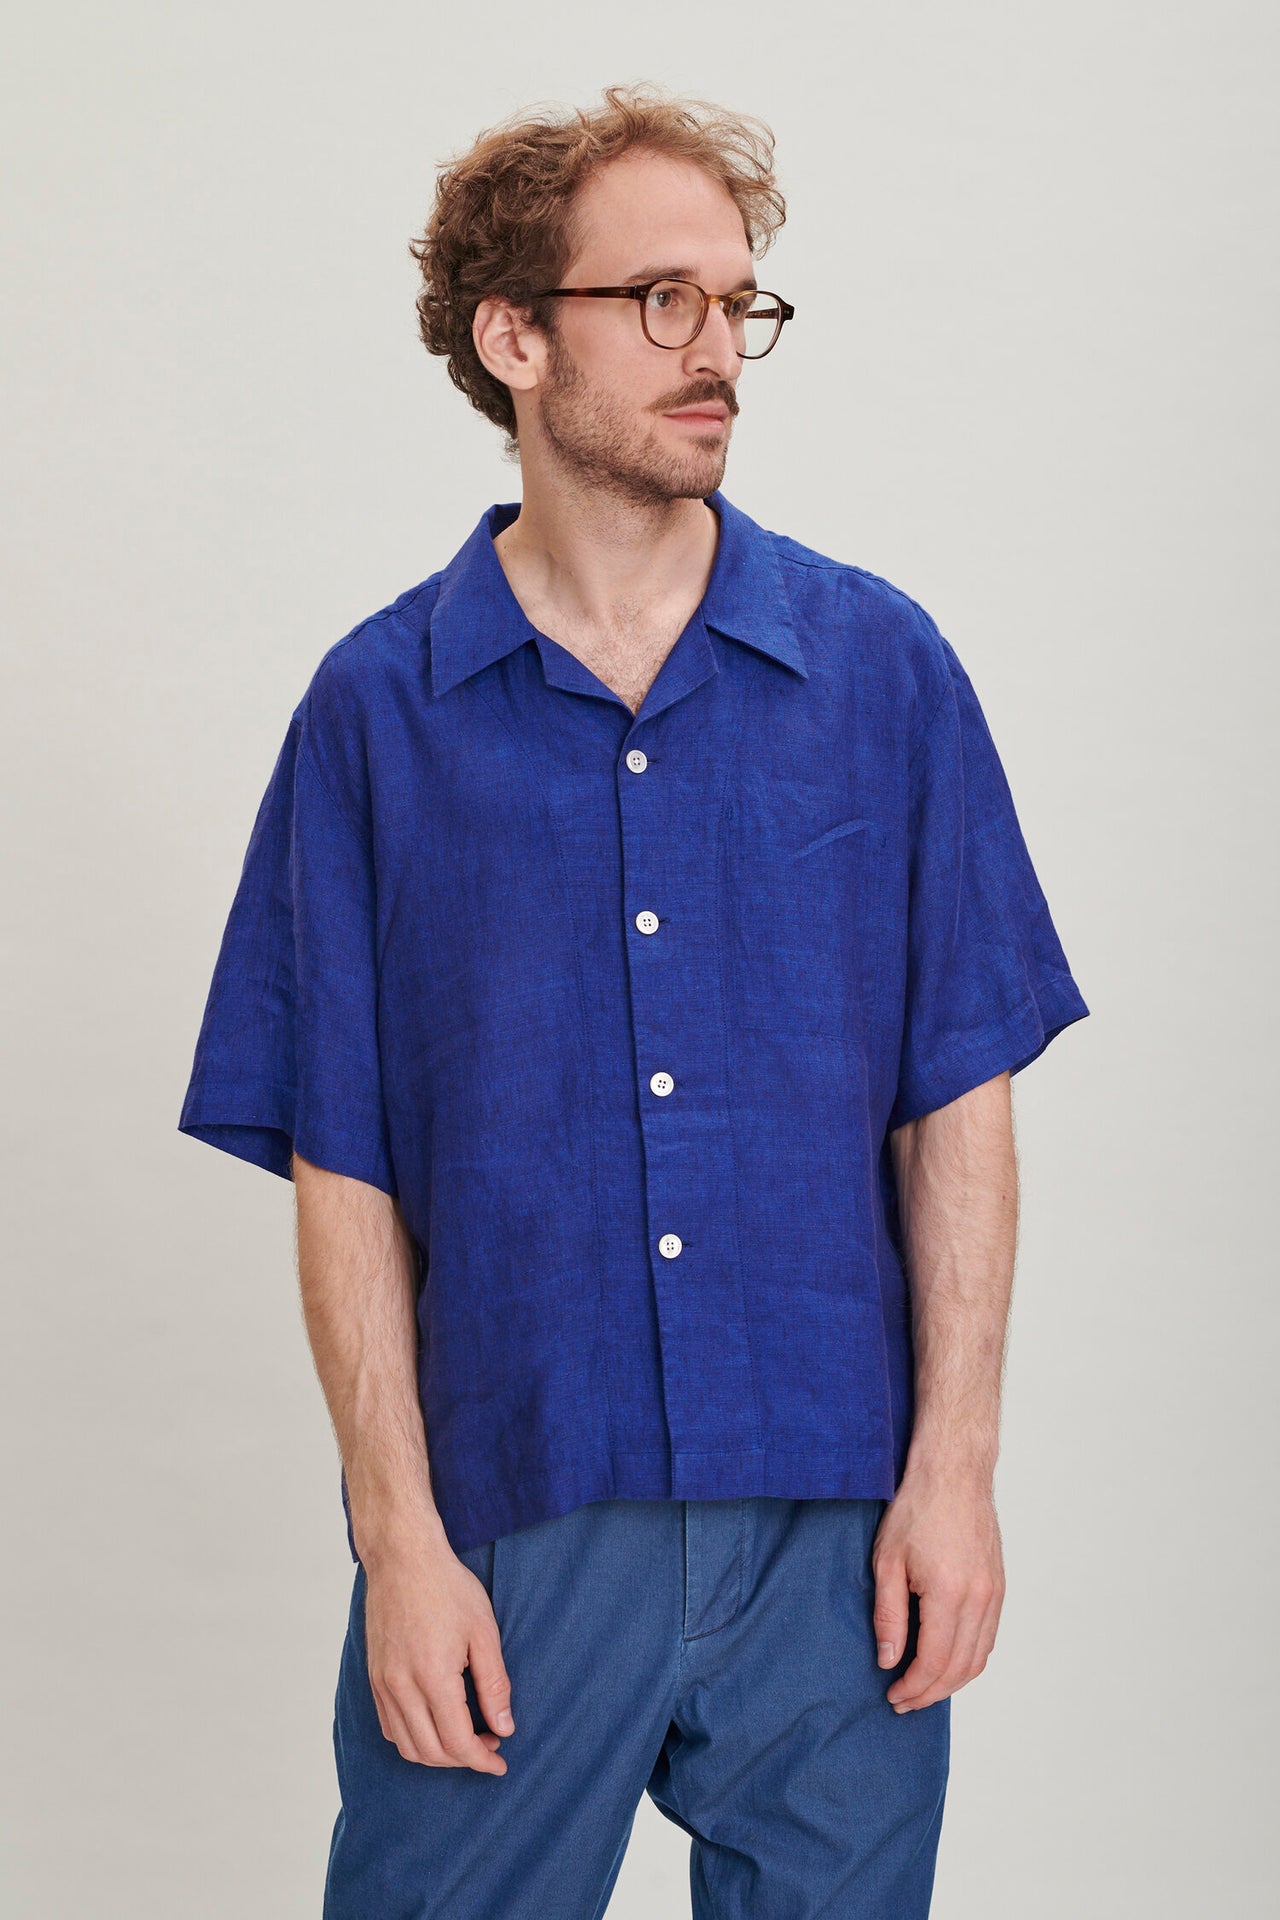 Short Sleeve Cuban Collar Shirt in a Soft and Airy Cobalt Blue Bohemian Linen